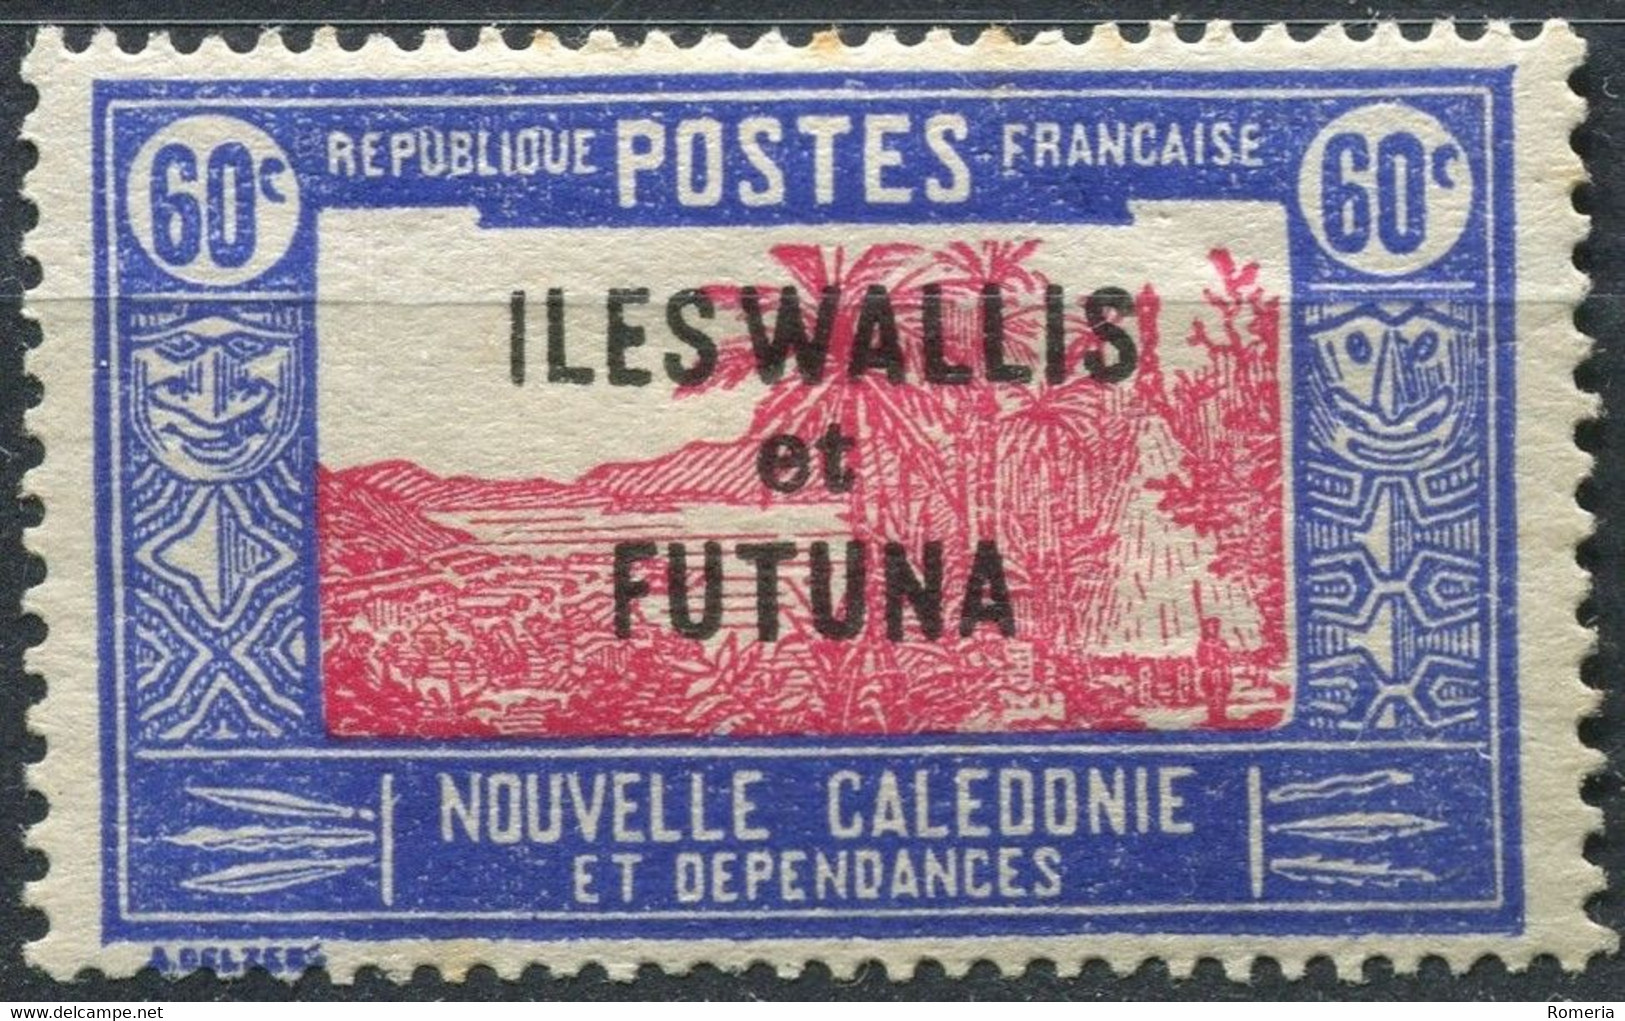 Wallis et Futuna - 1924 - 1944 - Lot timbres * TC + taxes - Nºs dans description